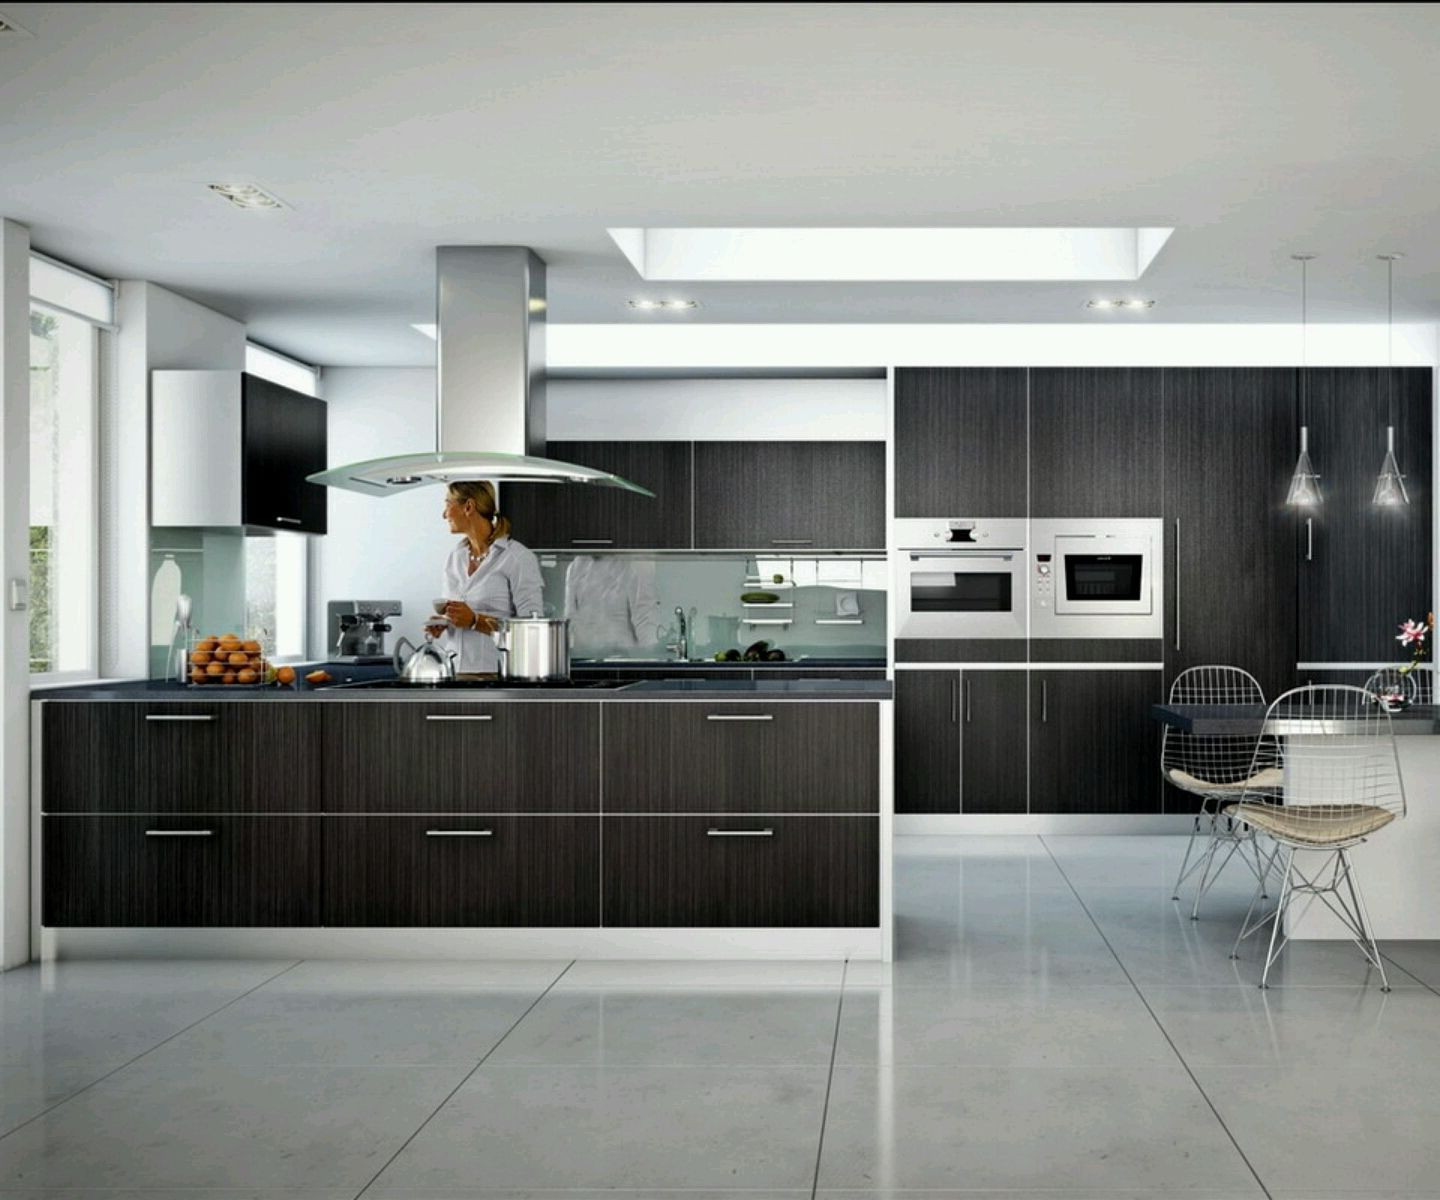 Modern Kitchen Designs Photo Gallery
 Kitchen Renovation Trends 2015 27 Ideas to Inspire